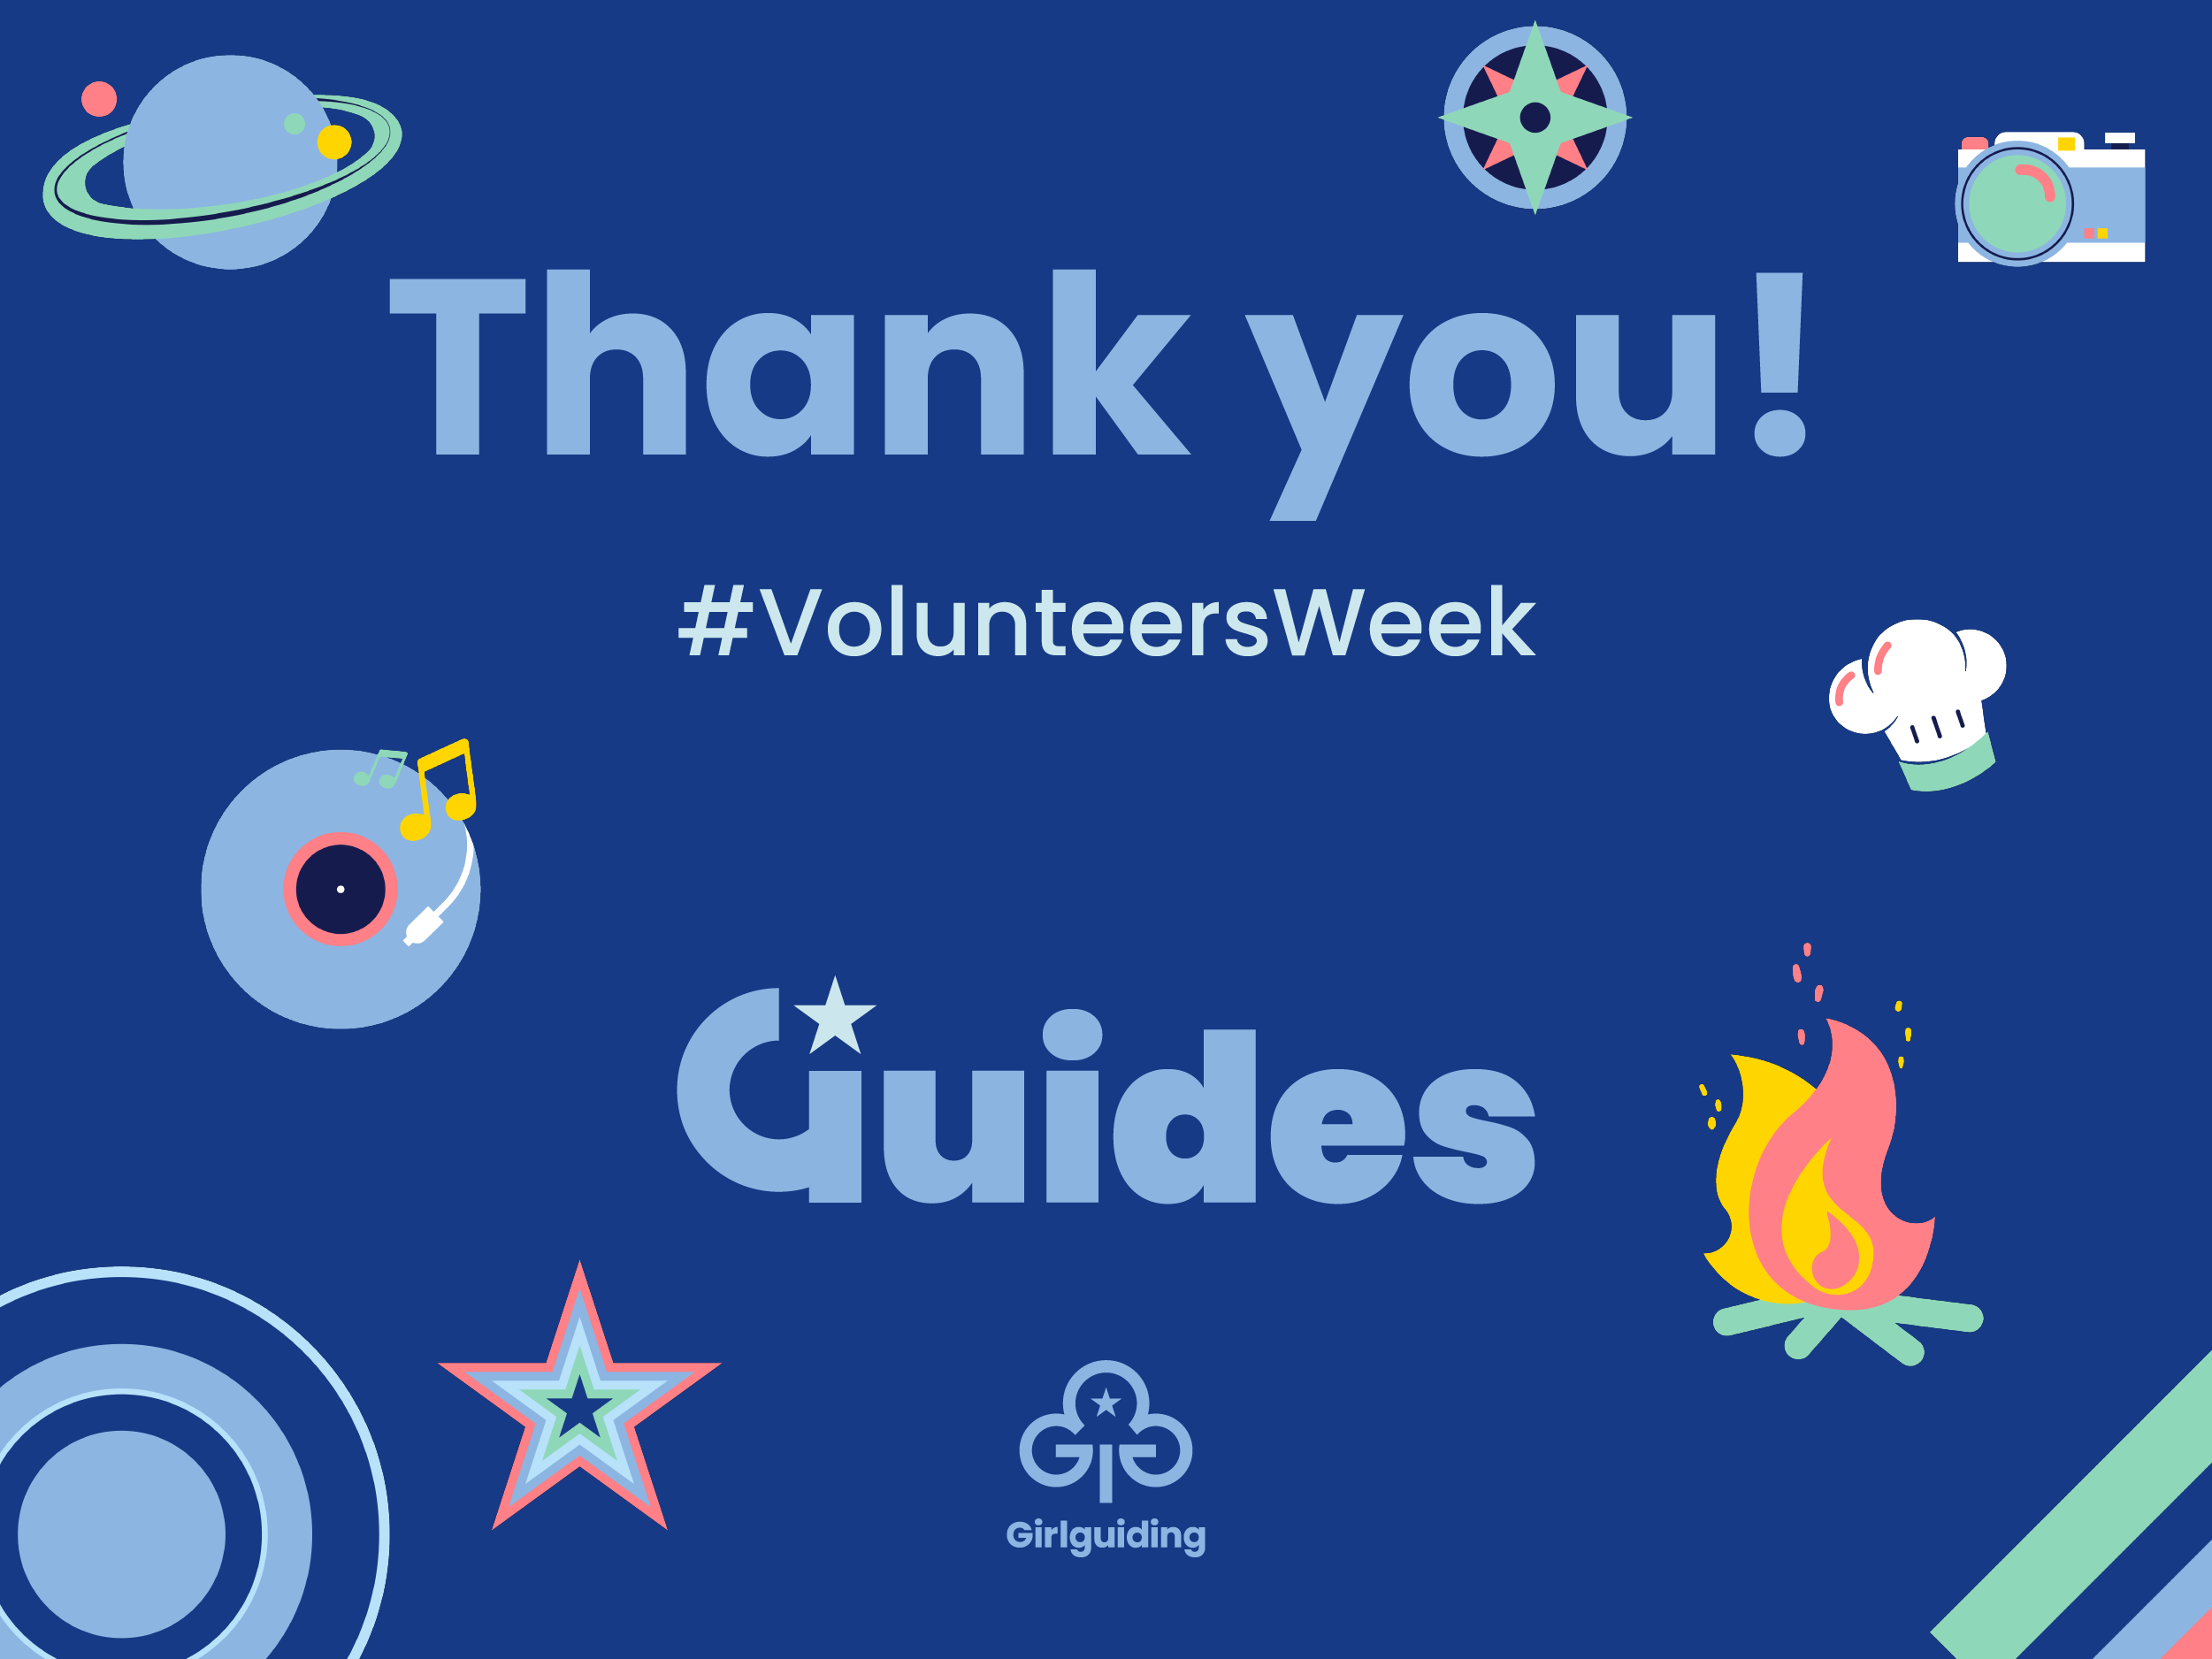 Guides - Volunteers Week, Thank you!